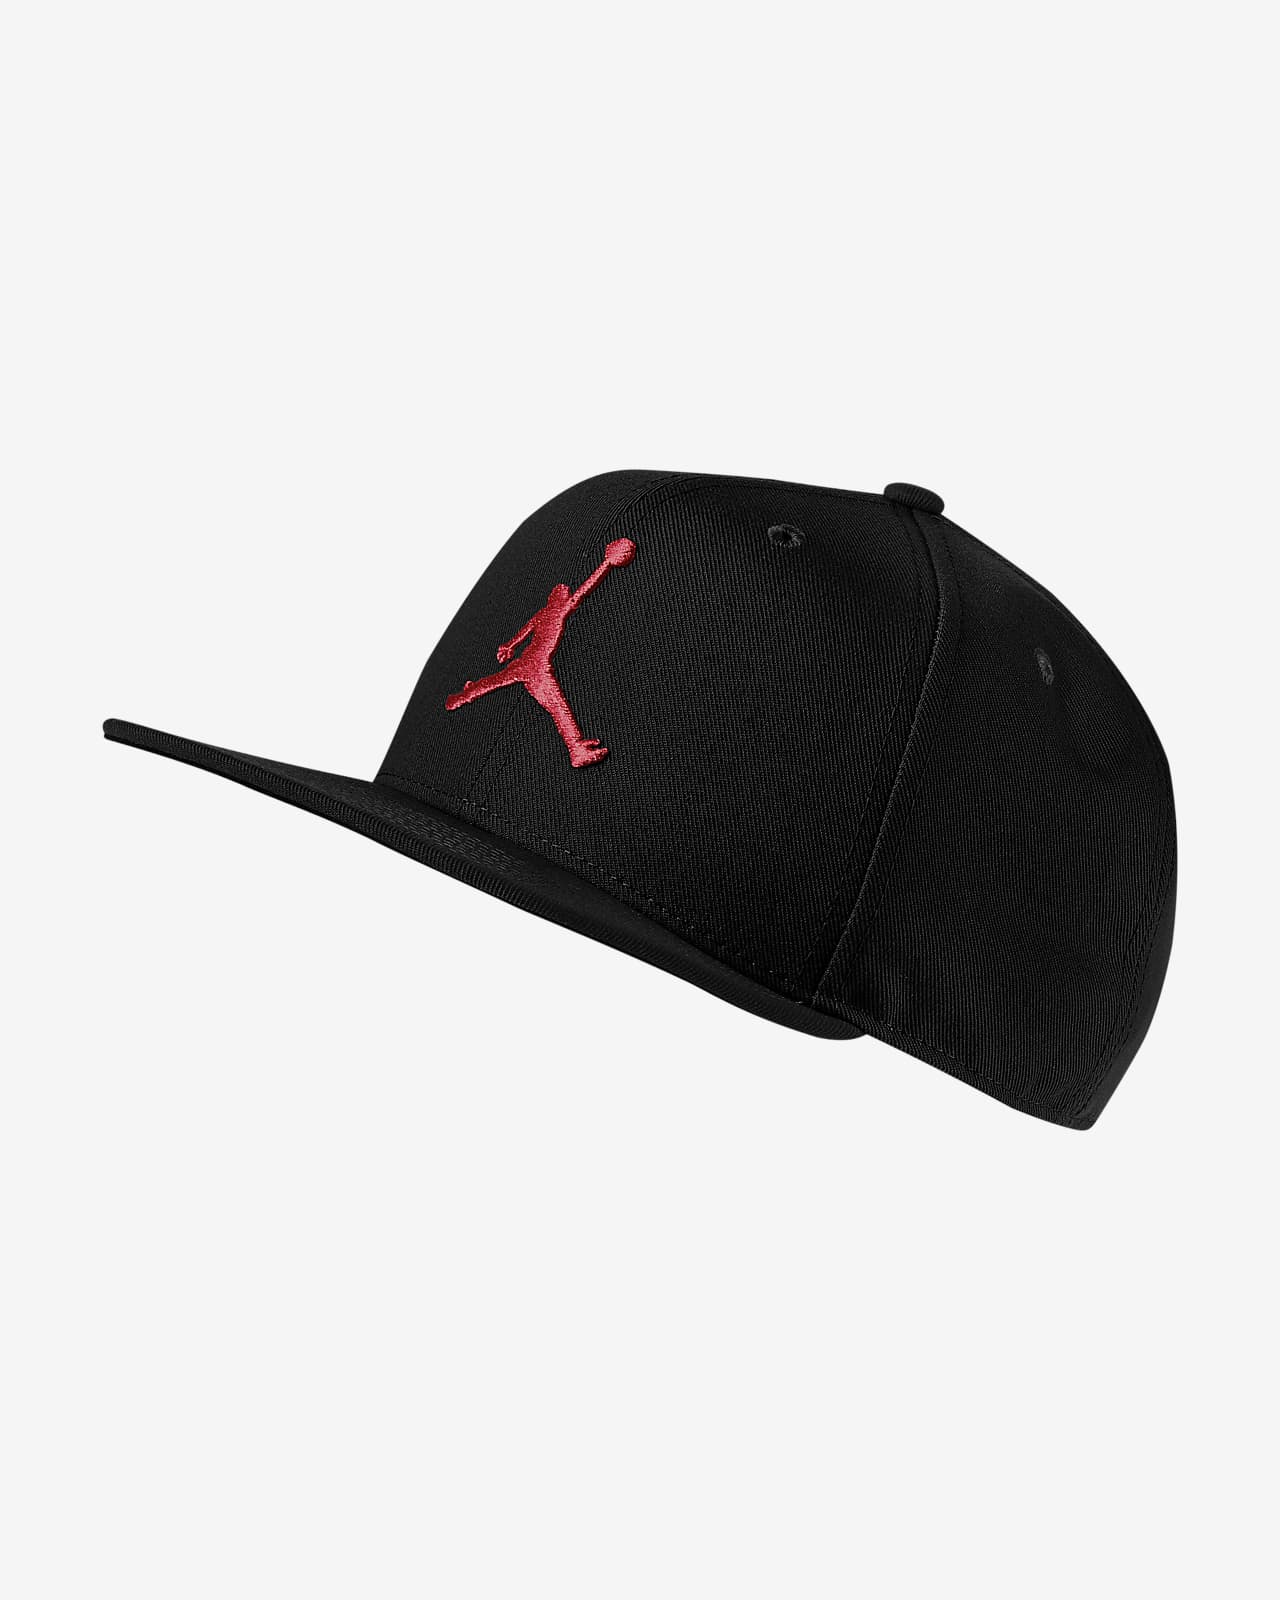 Productie Oom of meneer snorkel Jordan Pro Jumpman Snapback Hat. Nike.com